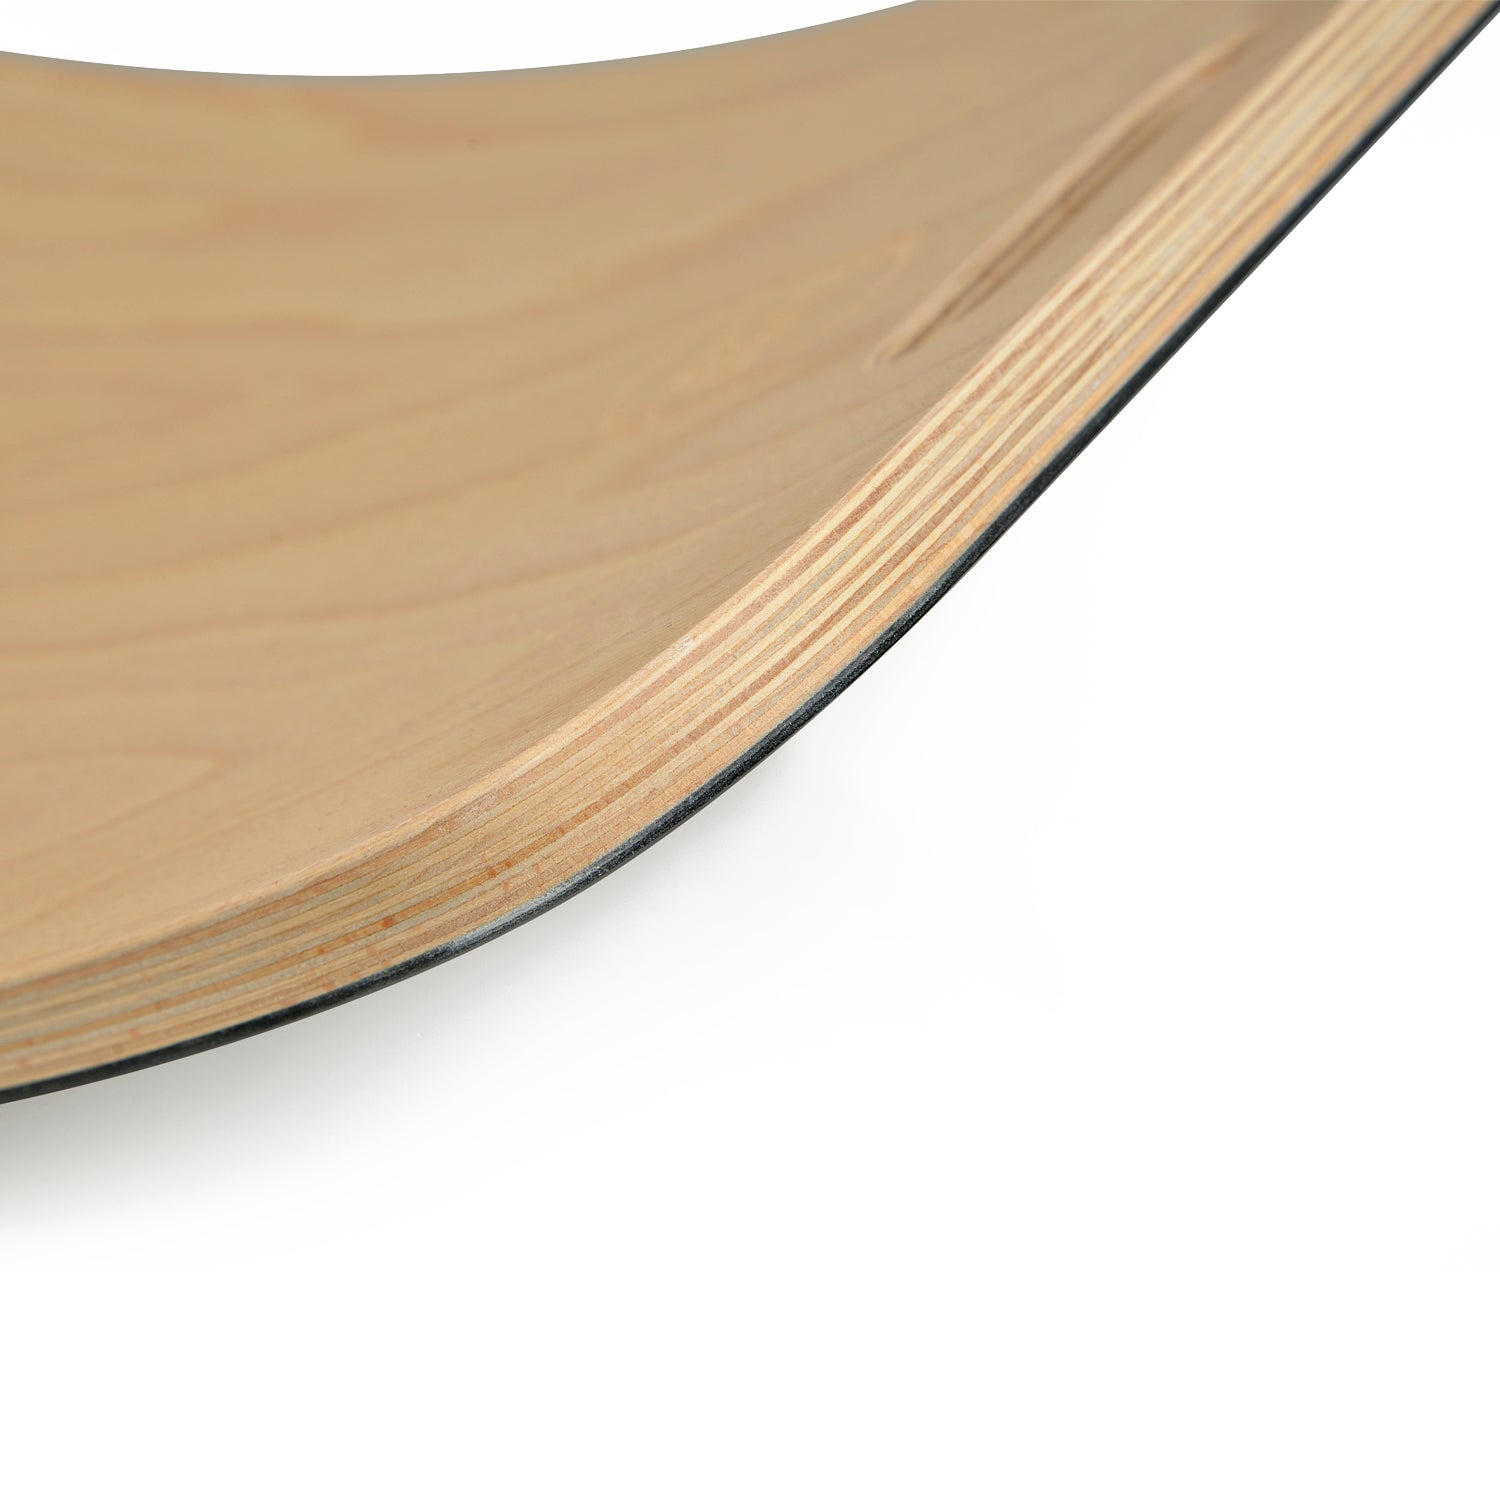 CurveLab Holz-Balancierbrett für Kinder | Entwicklung, Gleichgewicht, Motorik | 780x280mm, bis 160kg, Griechenland